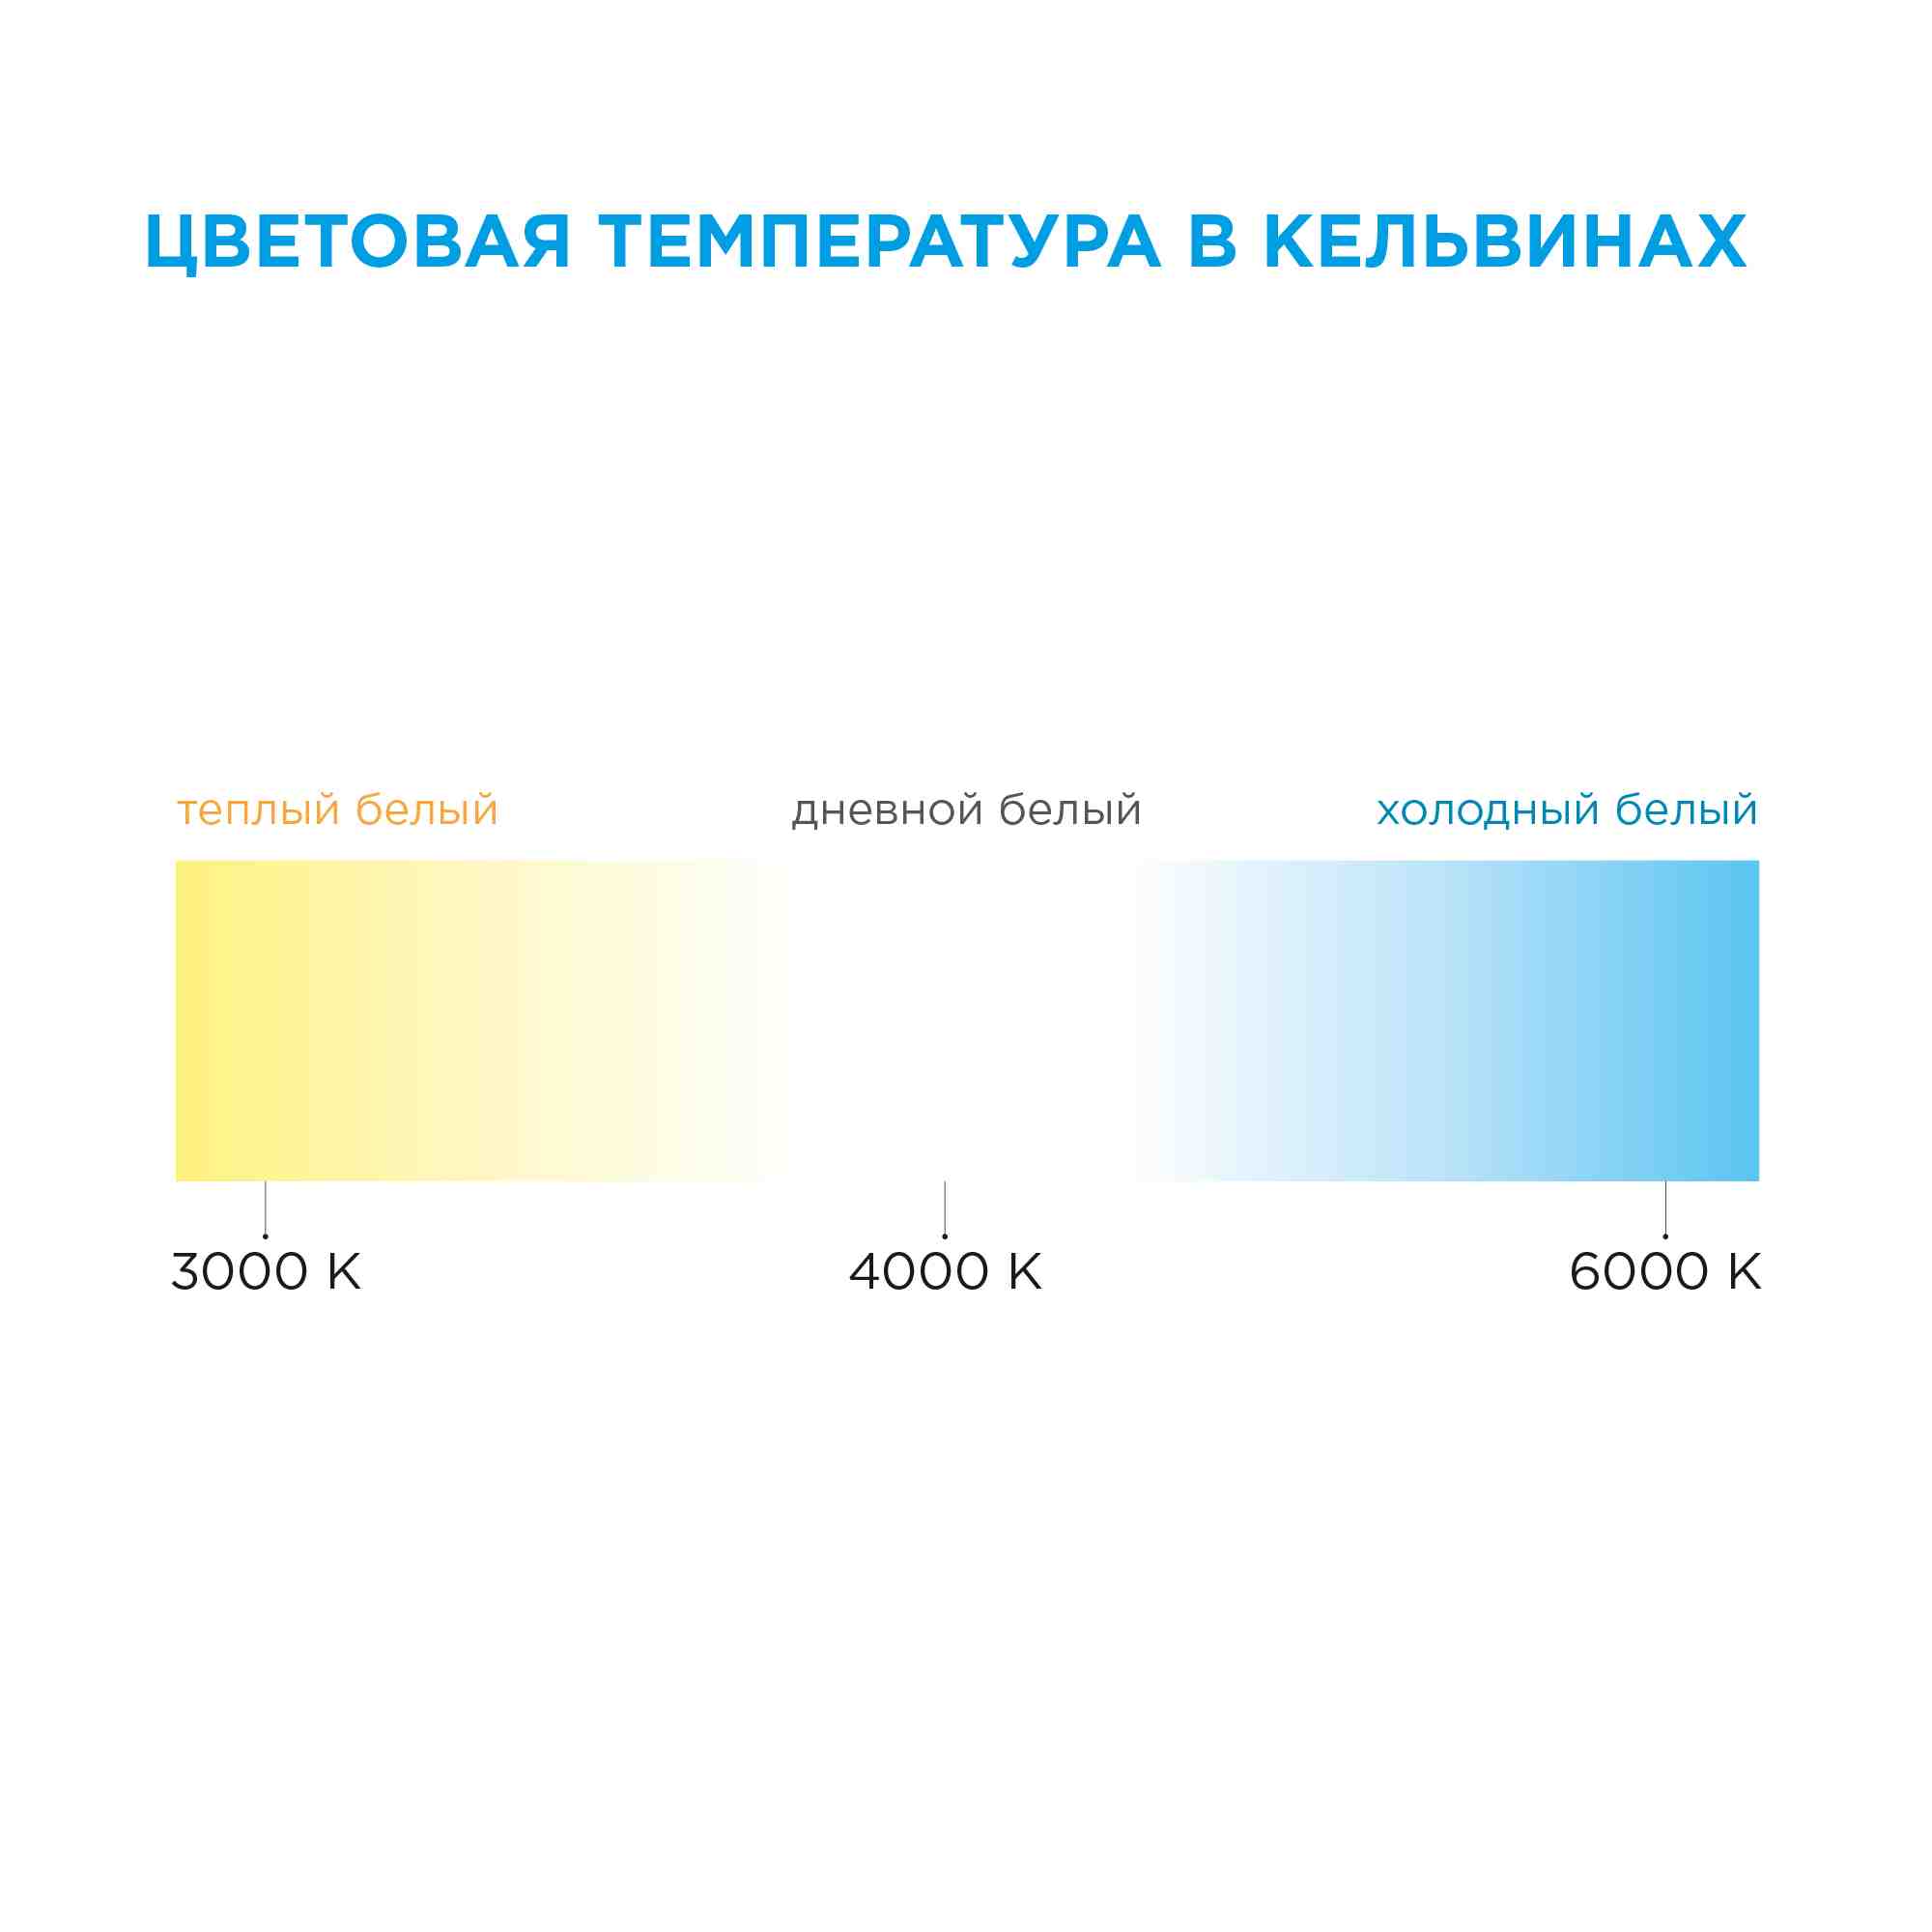 Светодиодная лента Apeyron 12В СТ 4,8Вт/м smd3528, 60д/м IP65 5м синяя 06BL в Москве